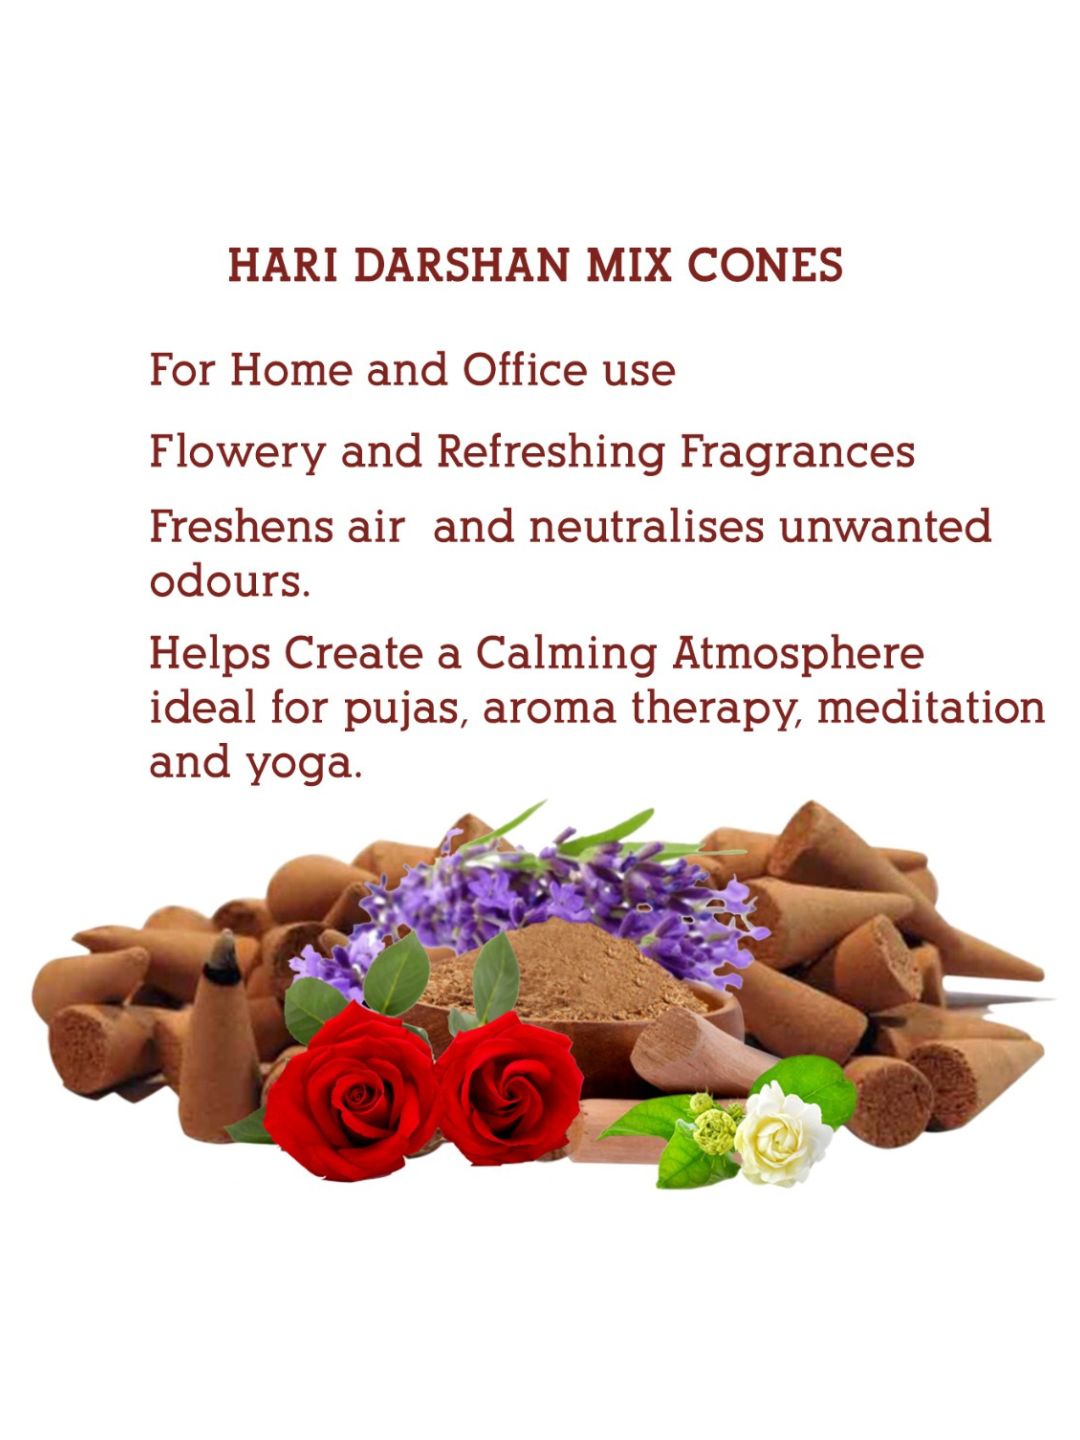 Hari Darshan Dhoop Jar Cones Mix – Lavender Rose Sandal Mogra (120 Cones, 30 of Each)